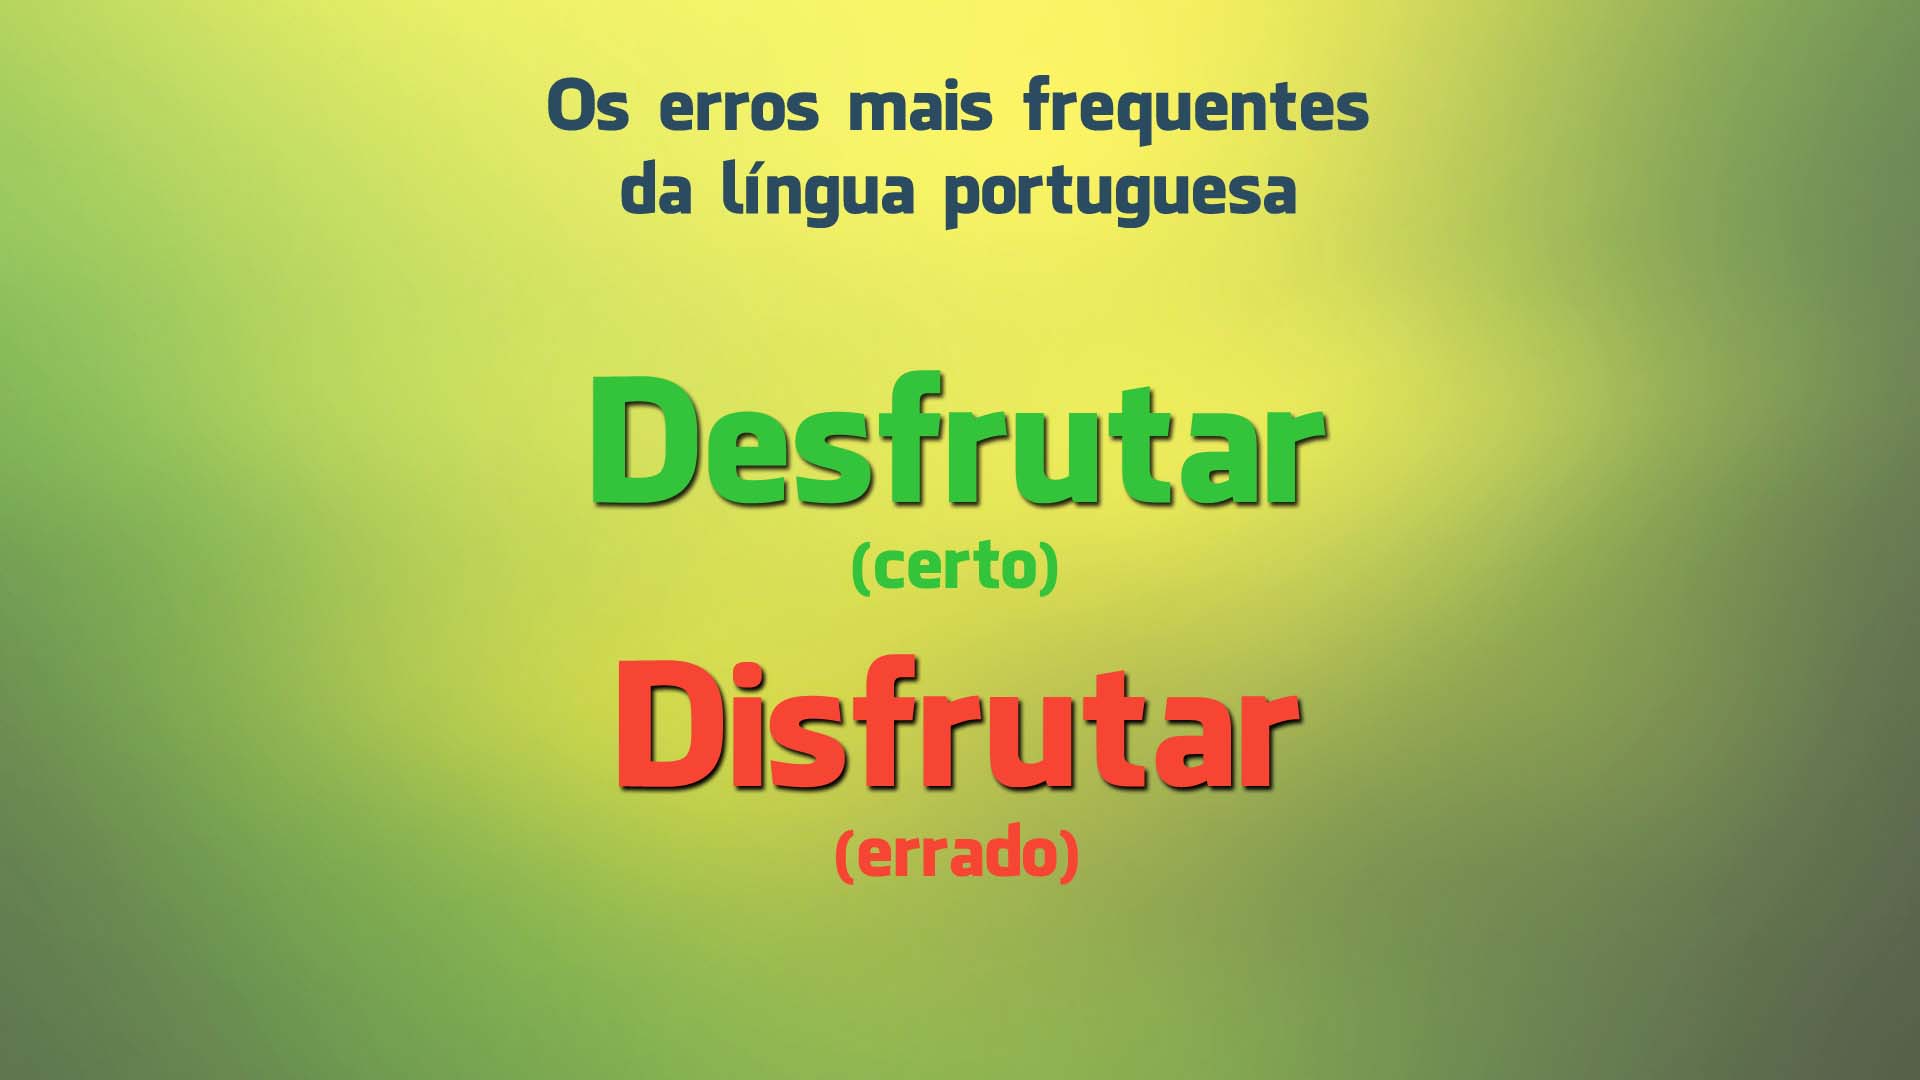 Os erros mais frequentes da língua portuguesa